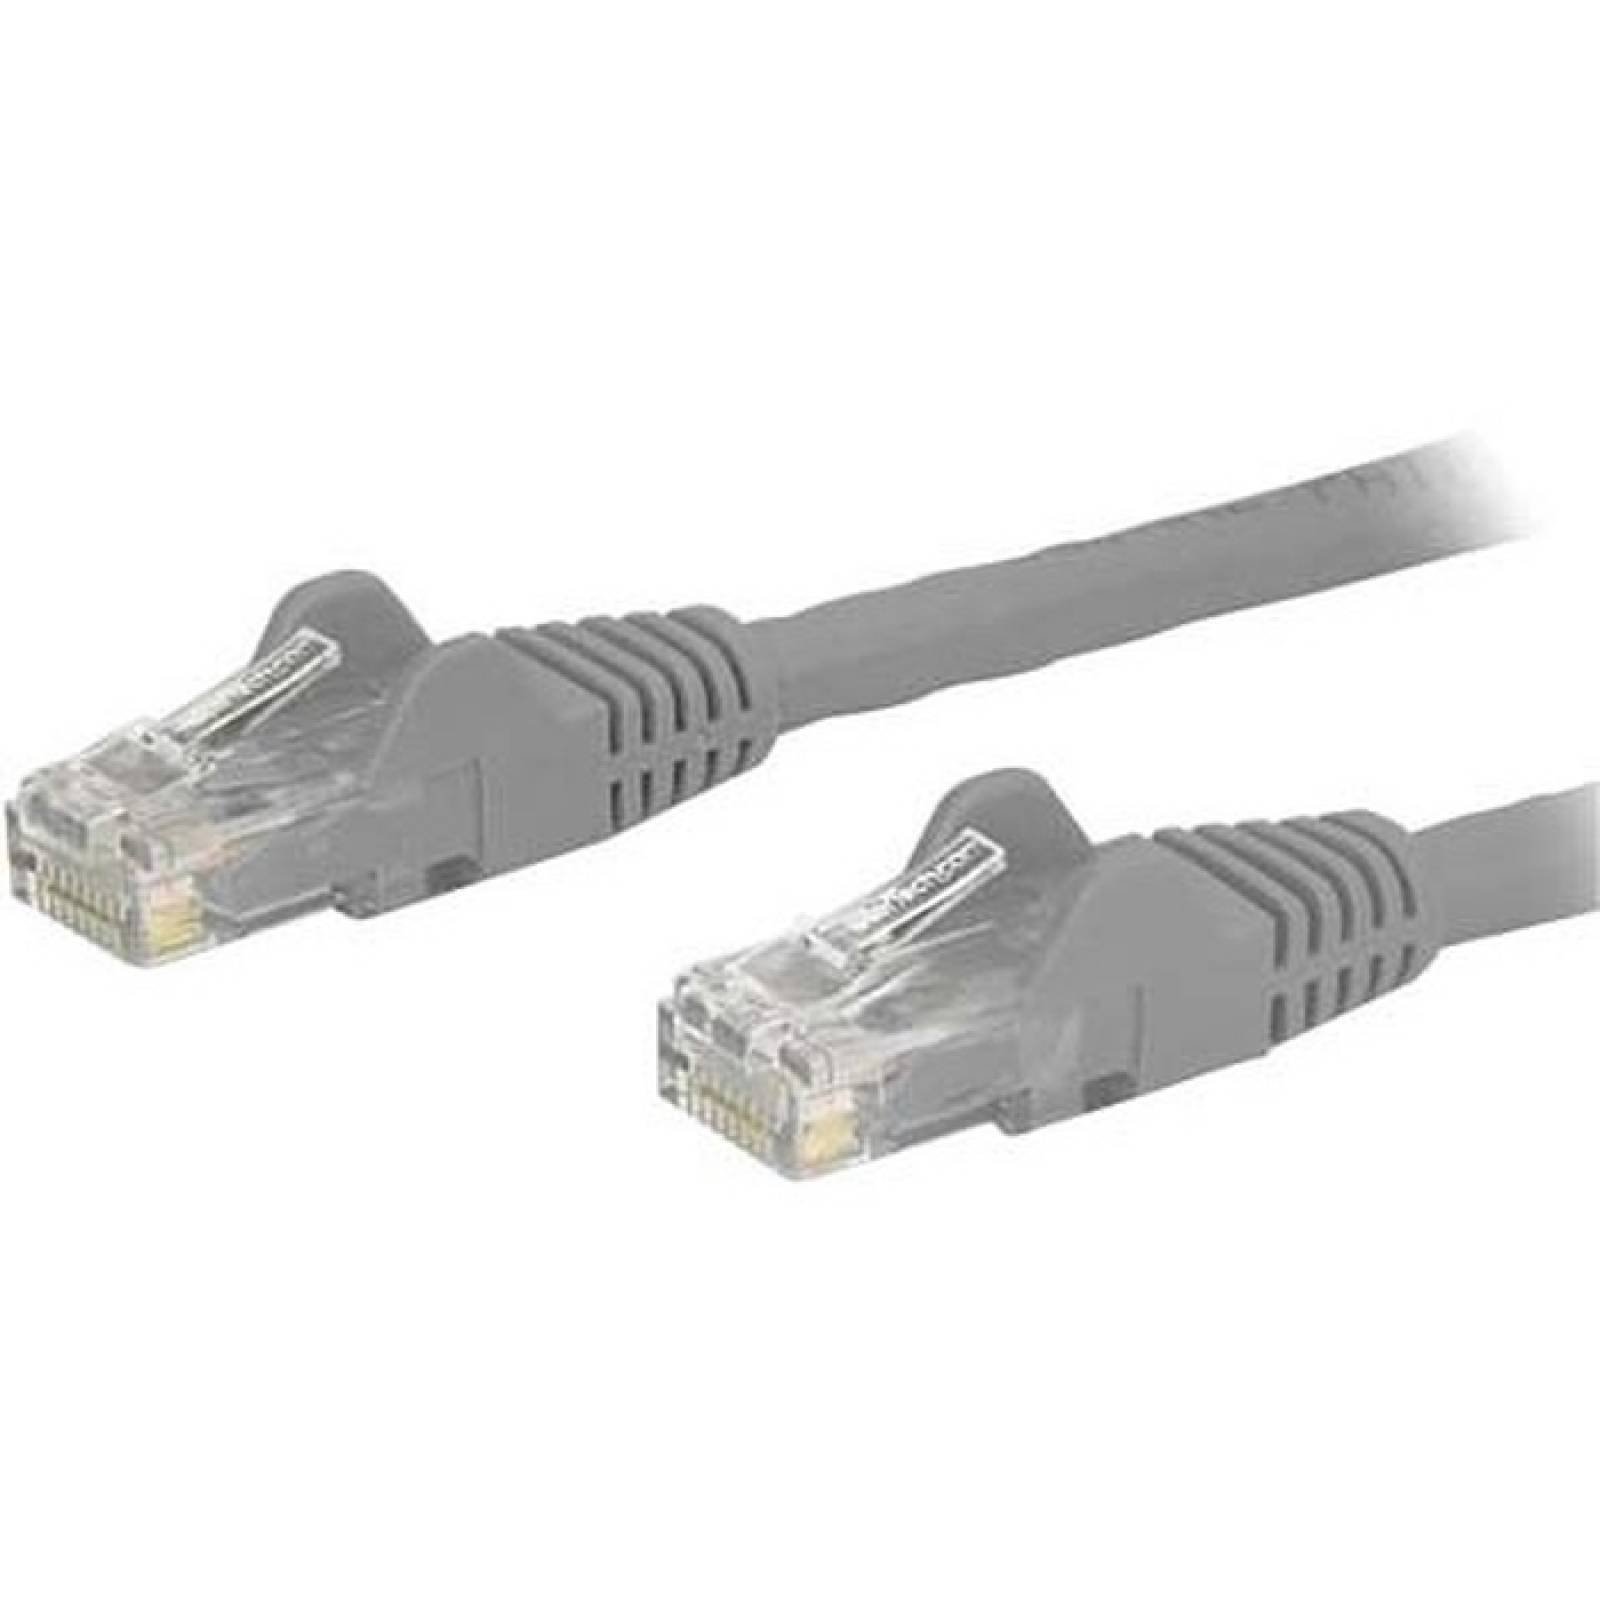 StarTechcom Cable de conexin Cat6 gris de 2 pies con conectores RJ45 sin cable  Cable Ethernet Cat6  Cable UTP Cat6 